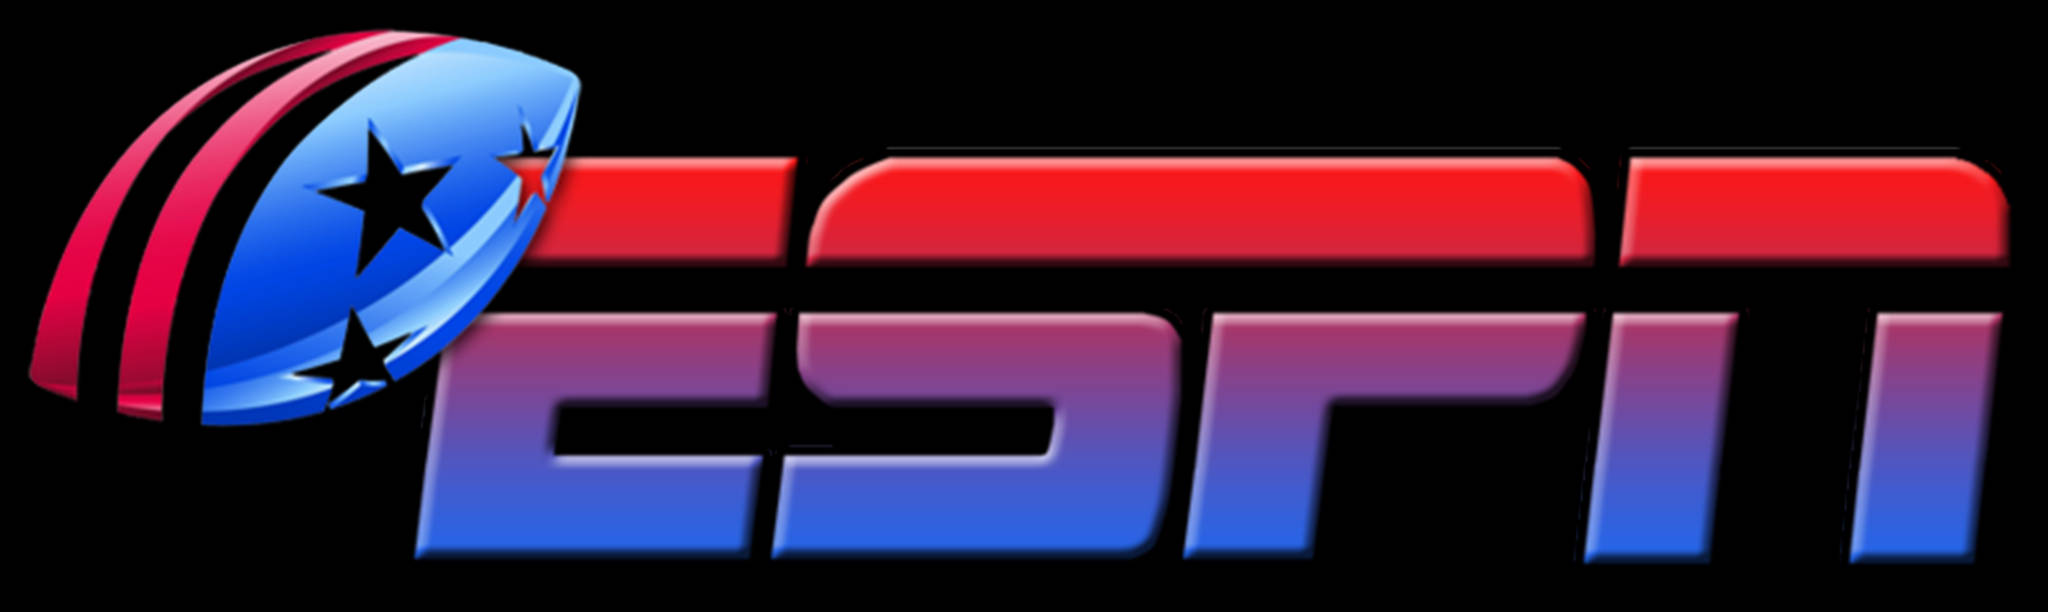 ESPN Football Logo Wallpaper